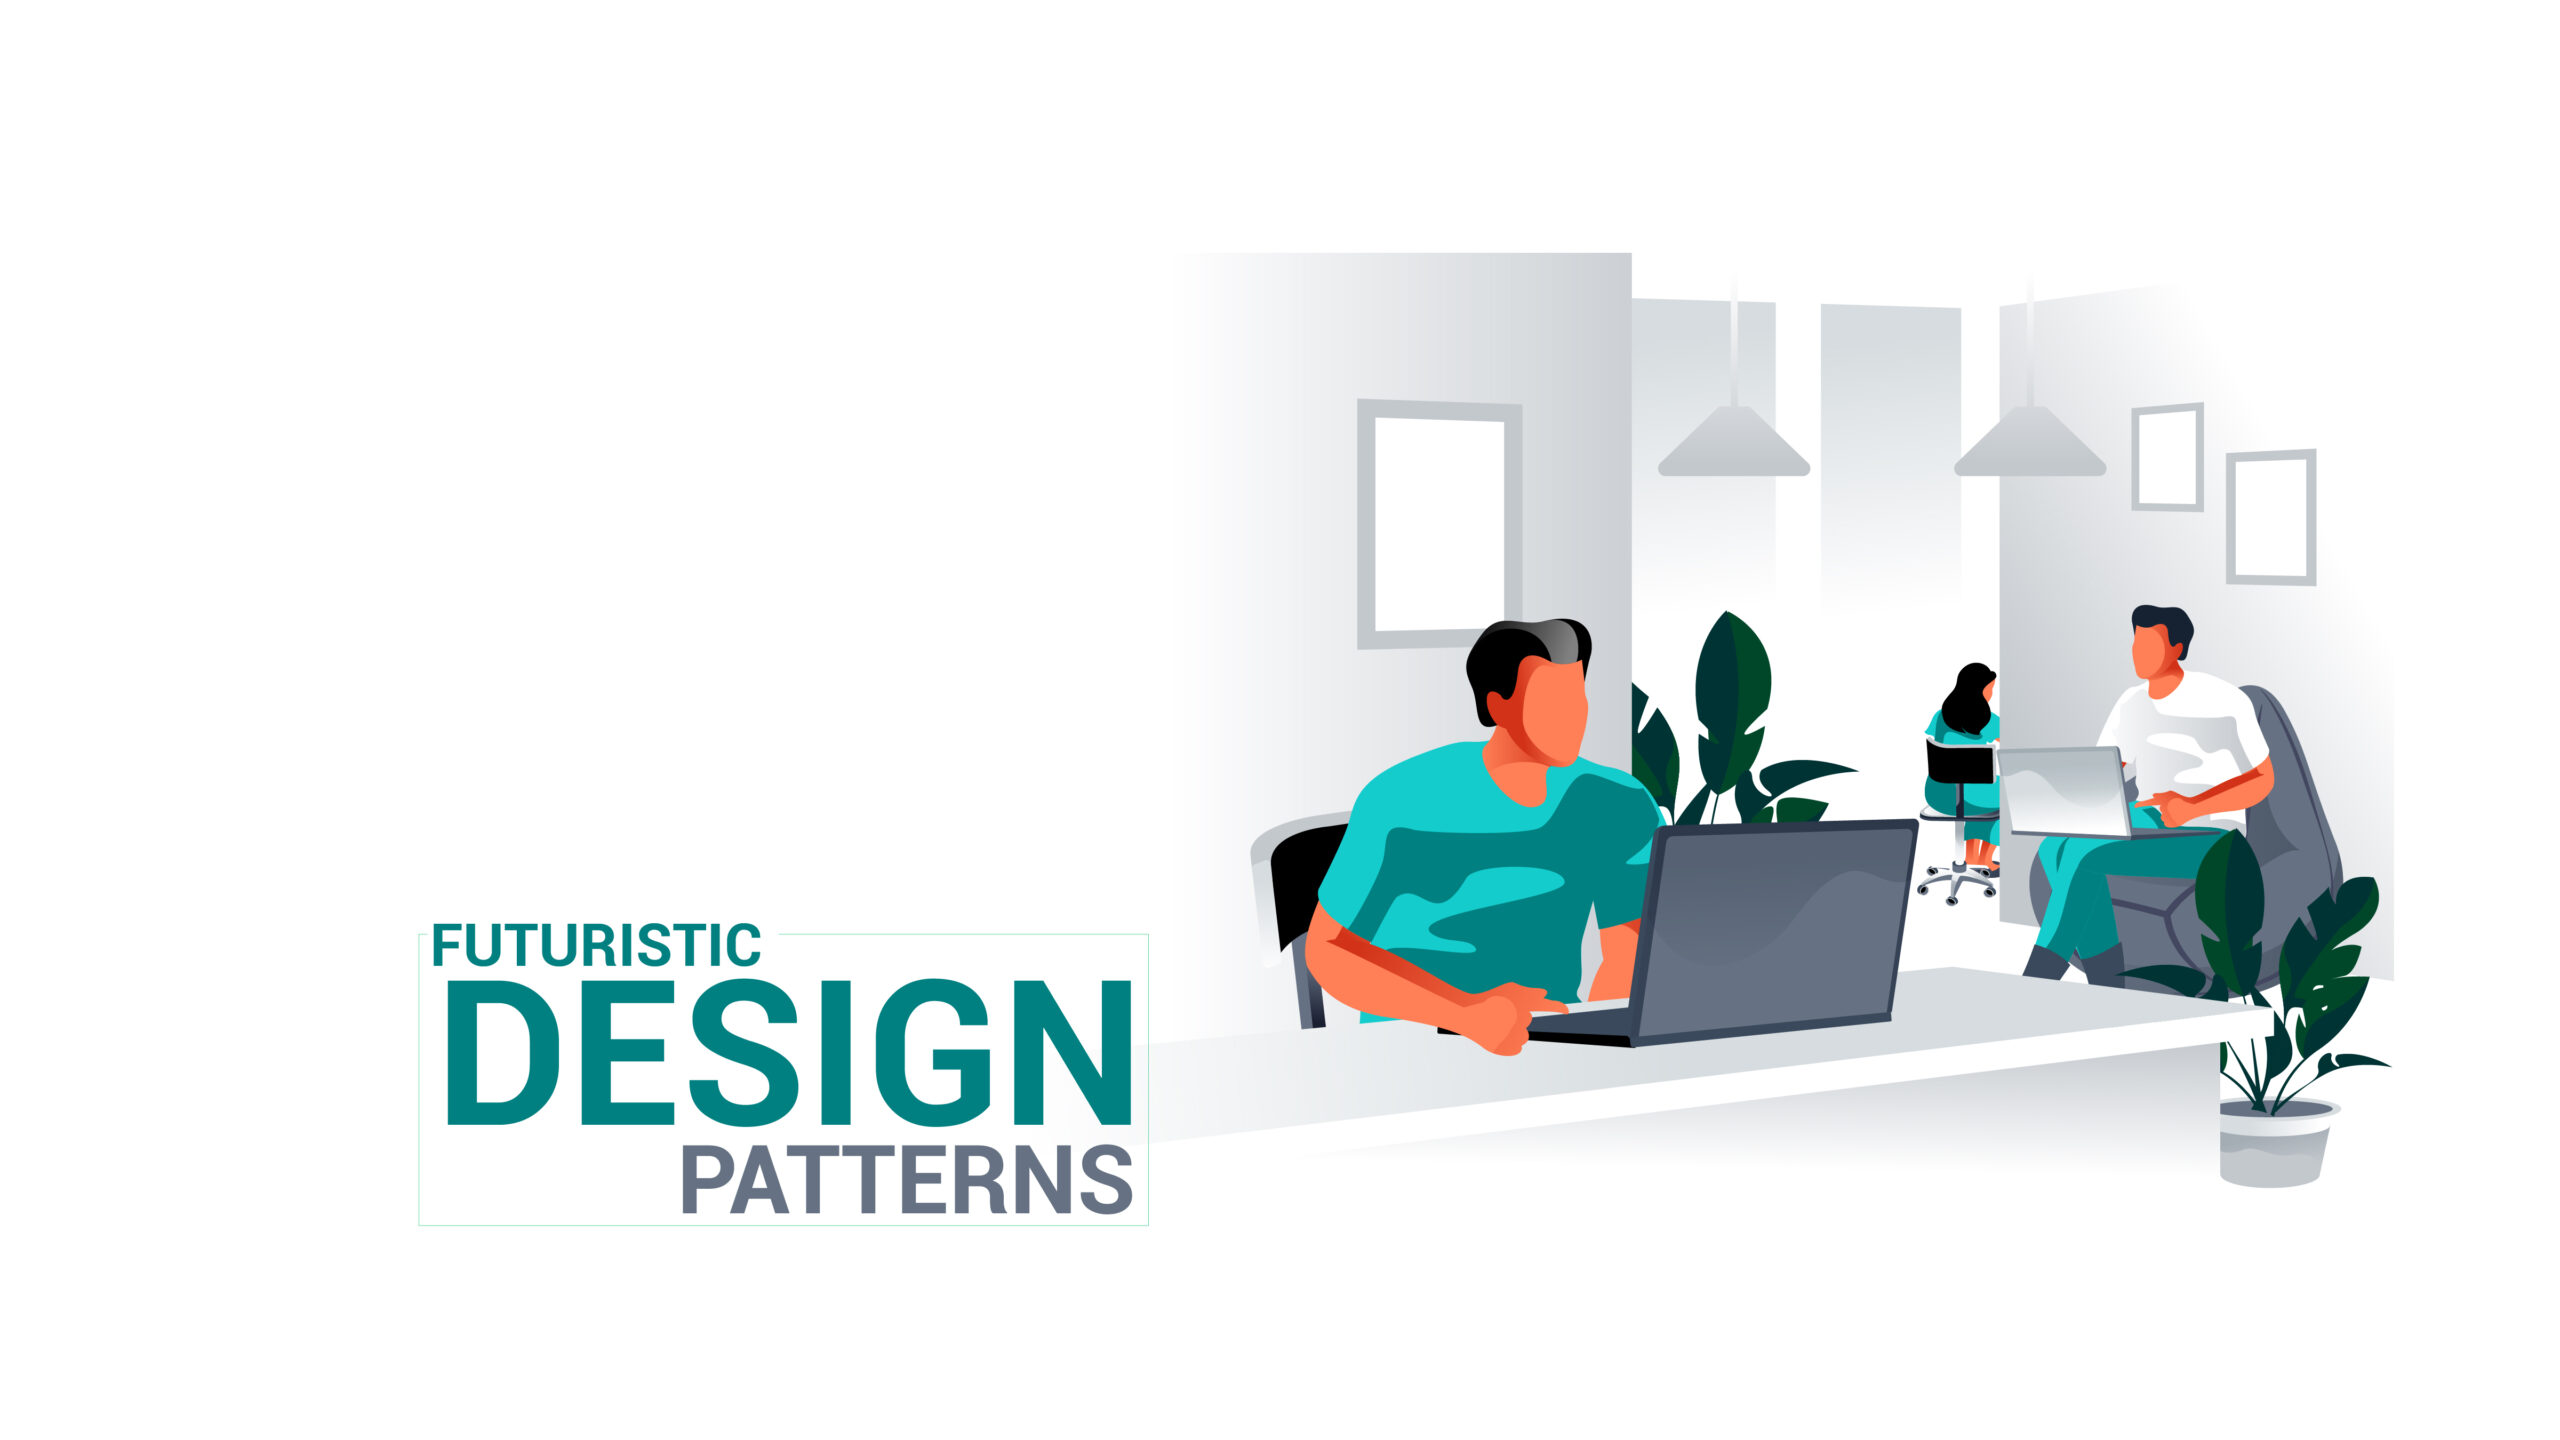 Futuristic design patterns graphicrevamp